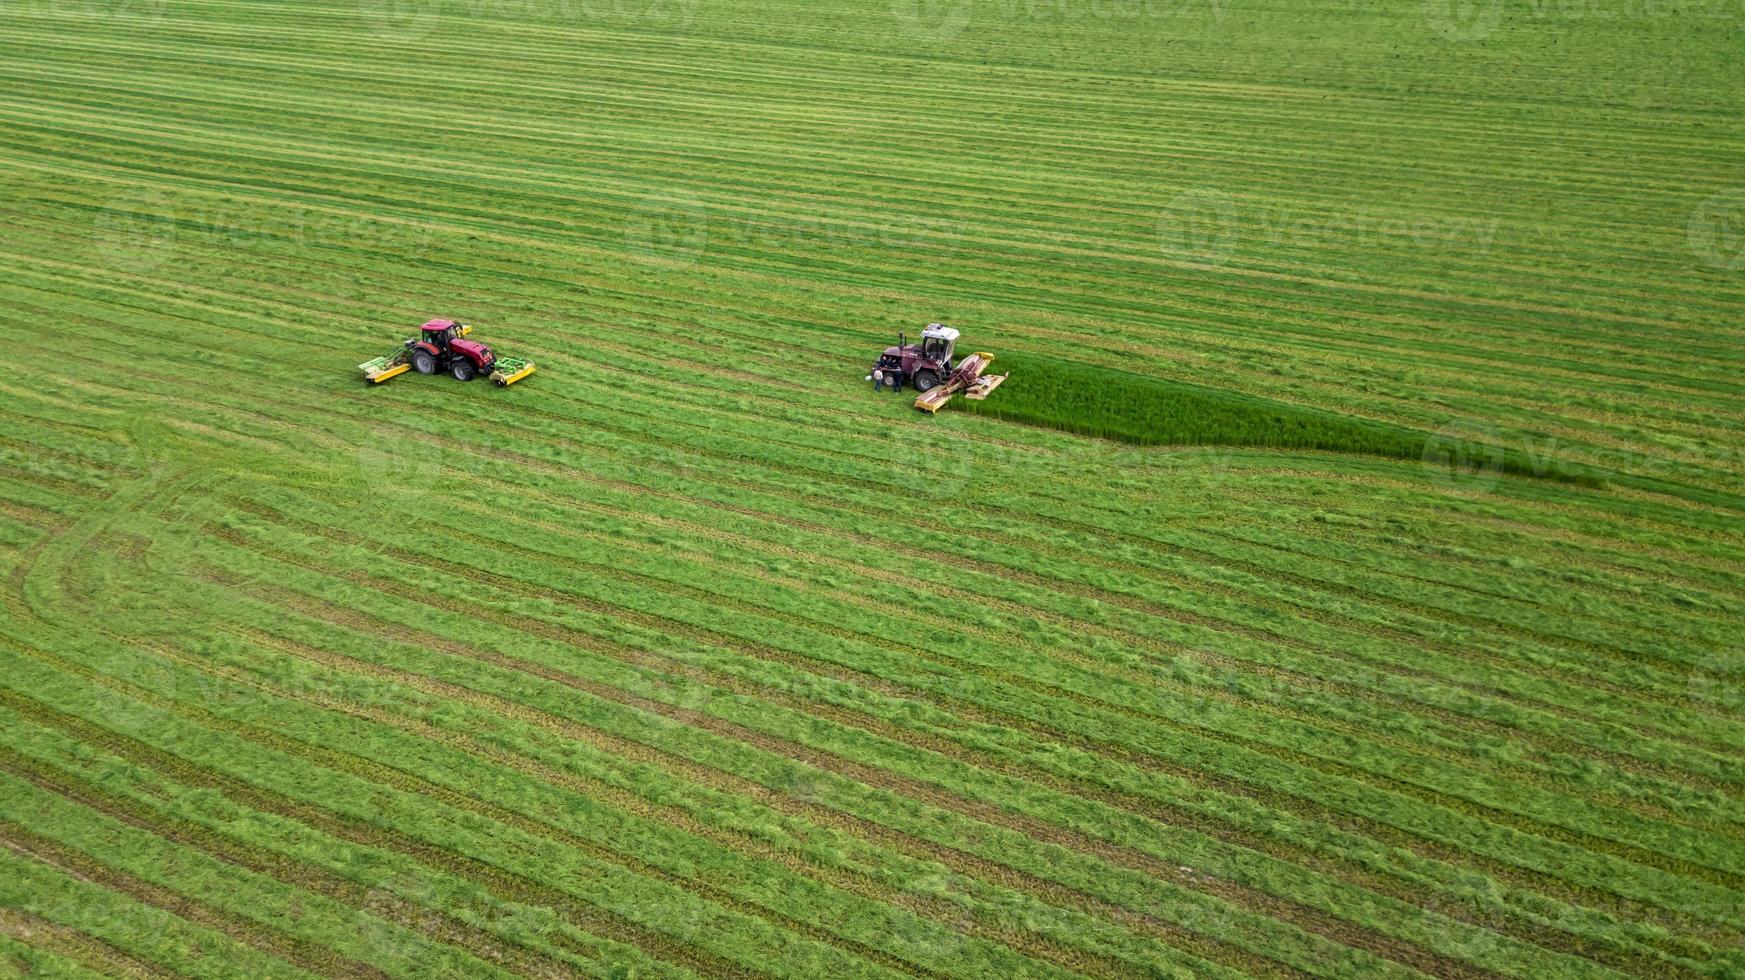 zwei traktoren mähen das gras auf einer grünen feldluftaufnahme foto